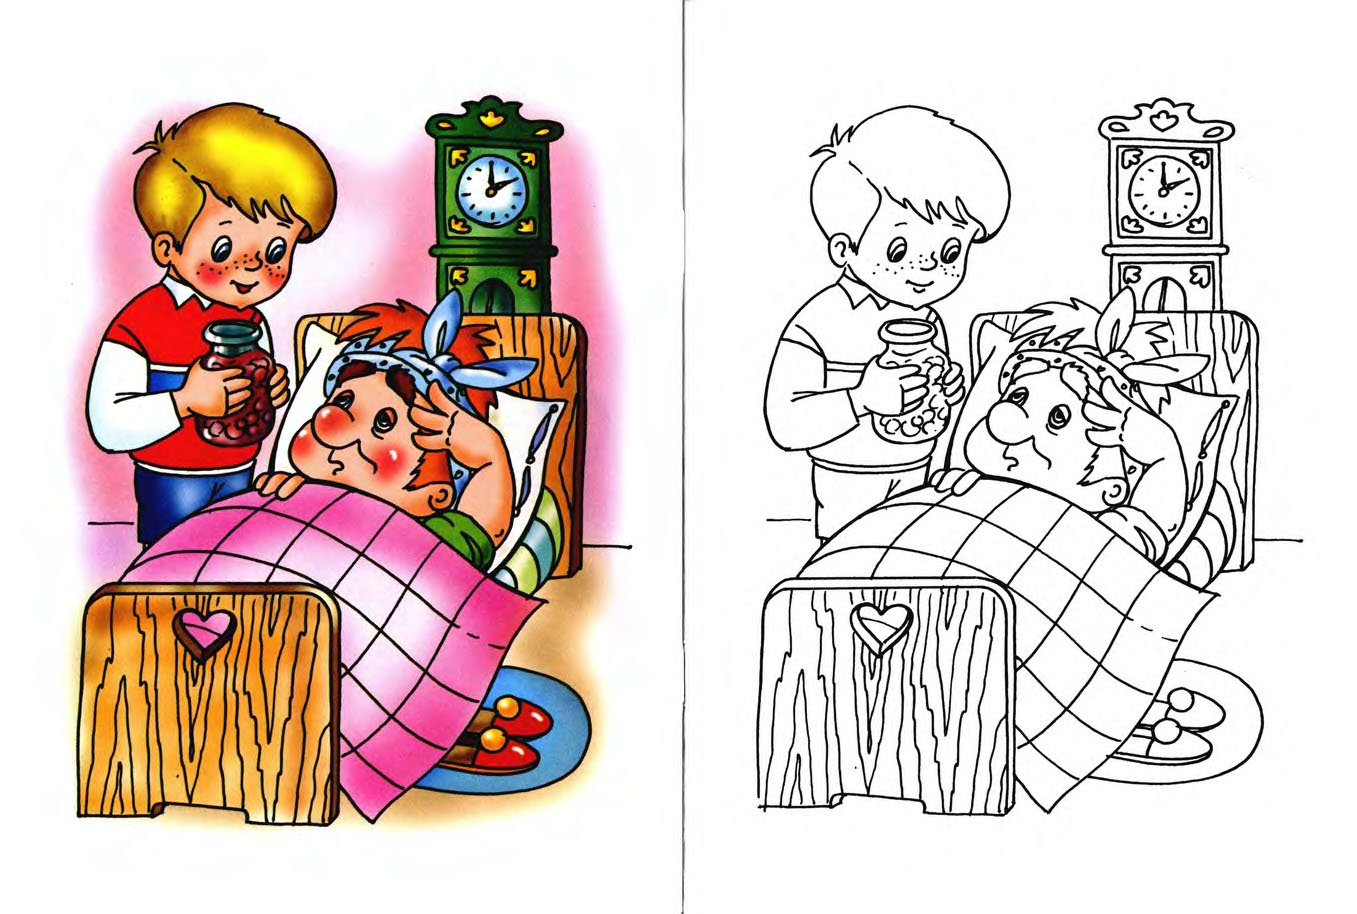  раскраски на тему карлсон для детей      раскраски с карслсоном на тему мультфильмы для мальчиков и девочек. Интересные раскраски с персонажами мультфильма карлсон для детей        